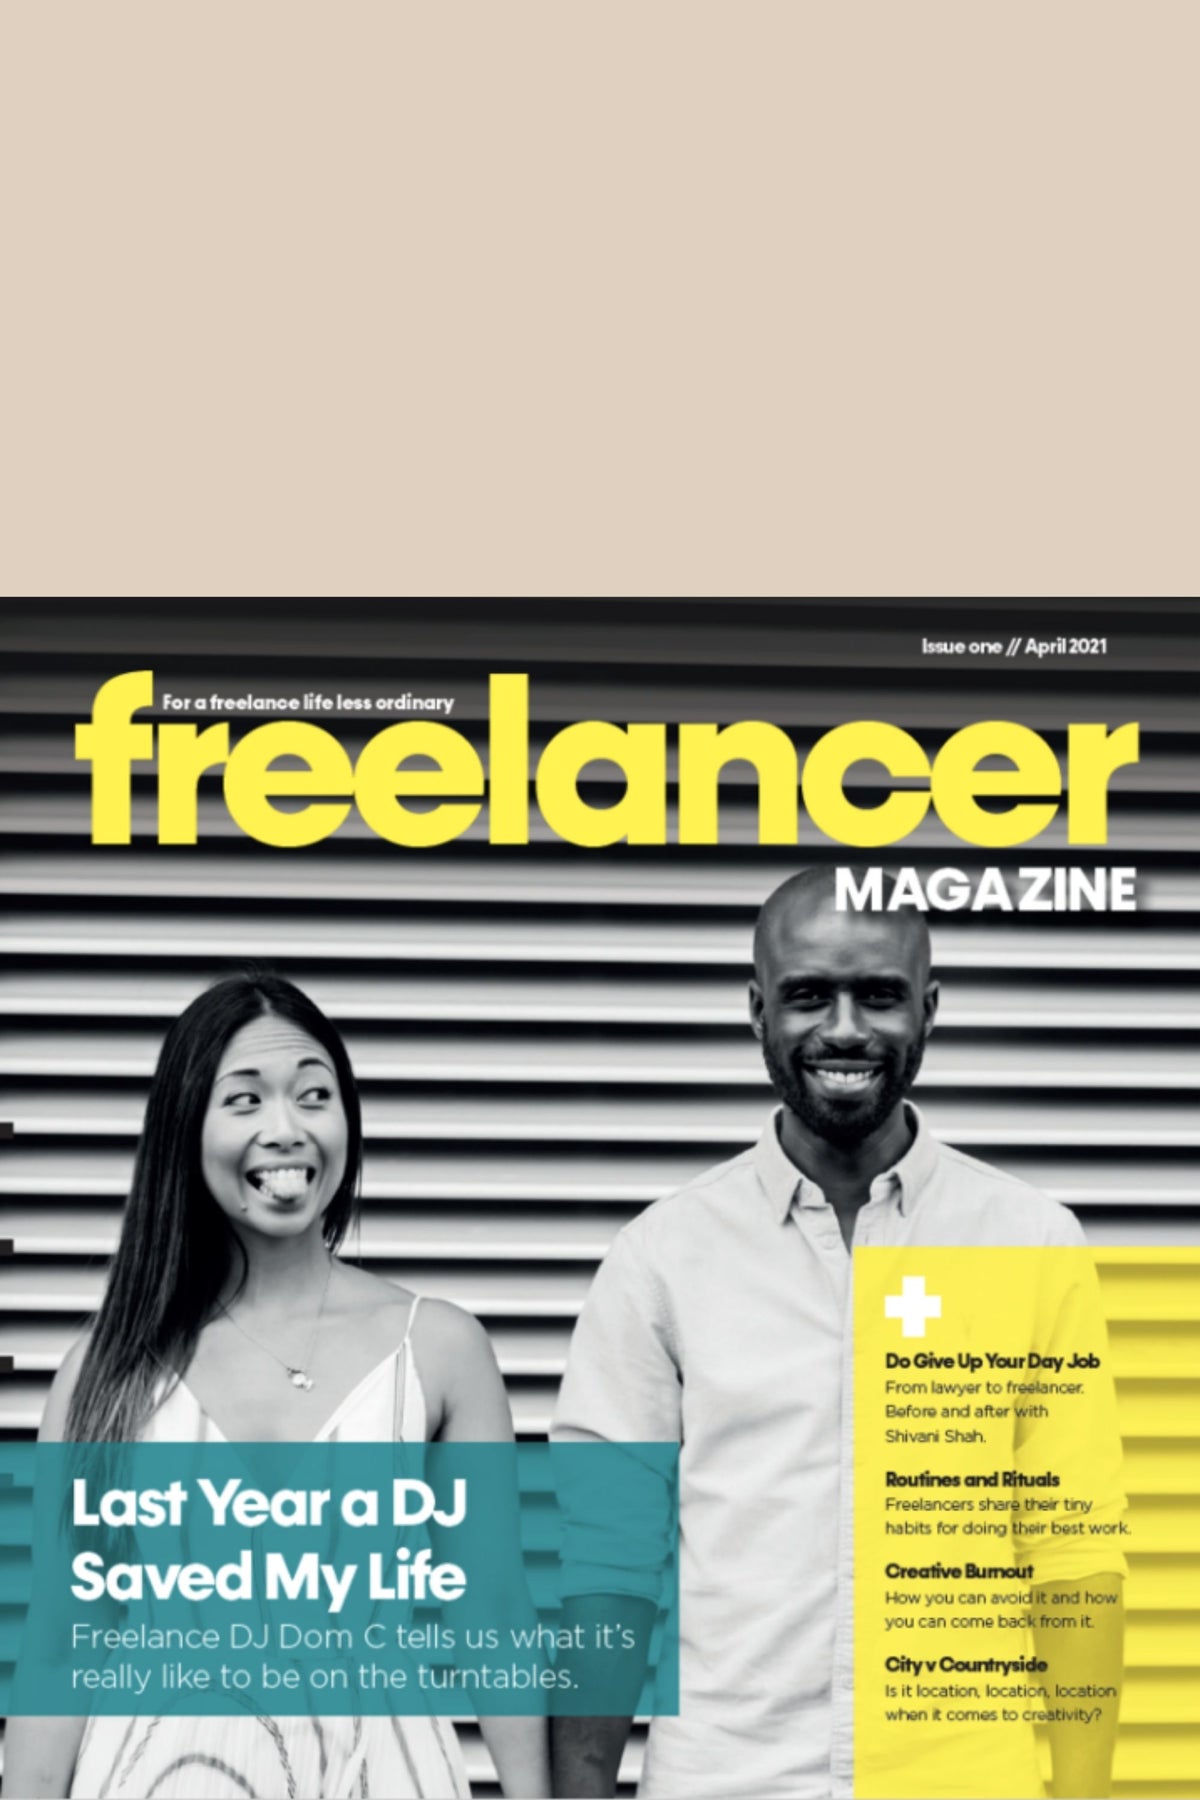 Freelancer Magazine Issue One